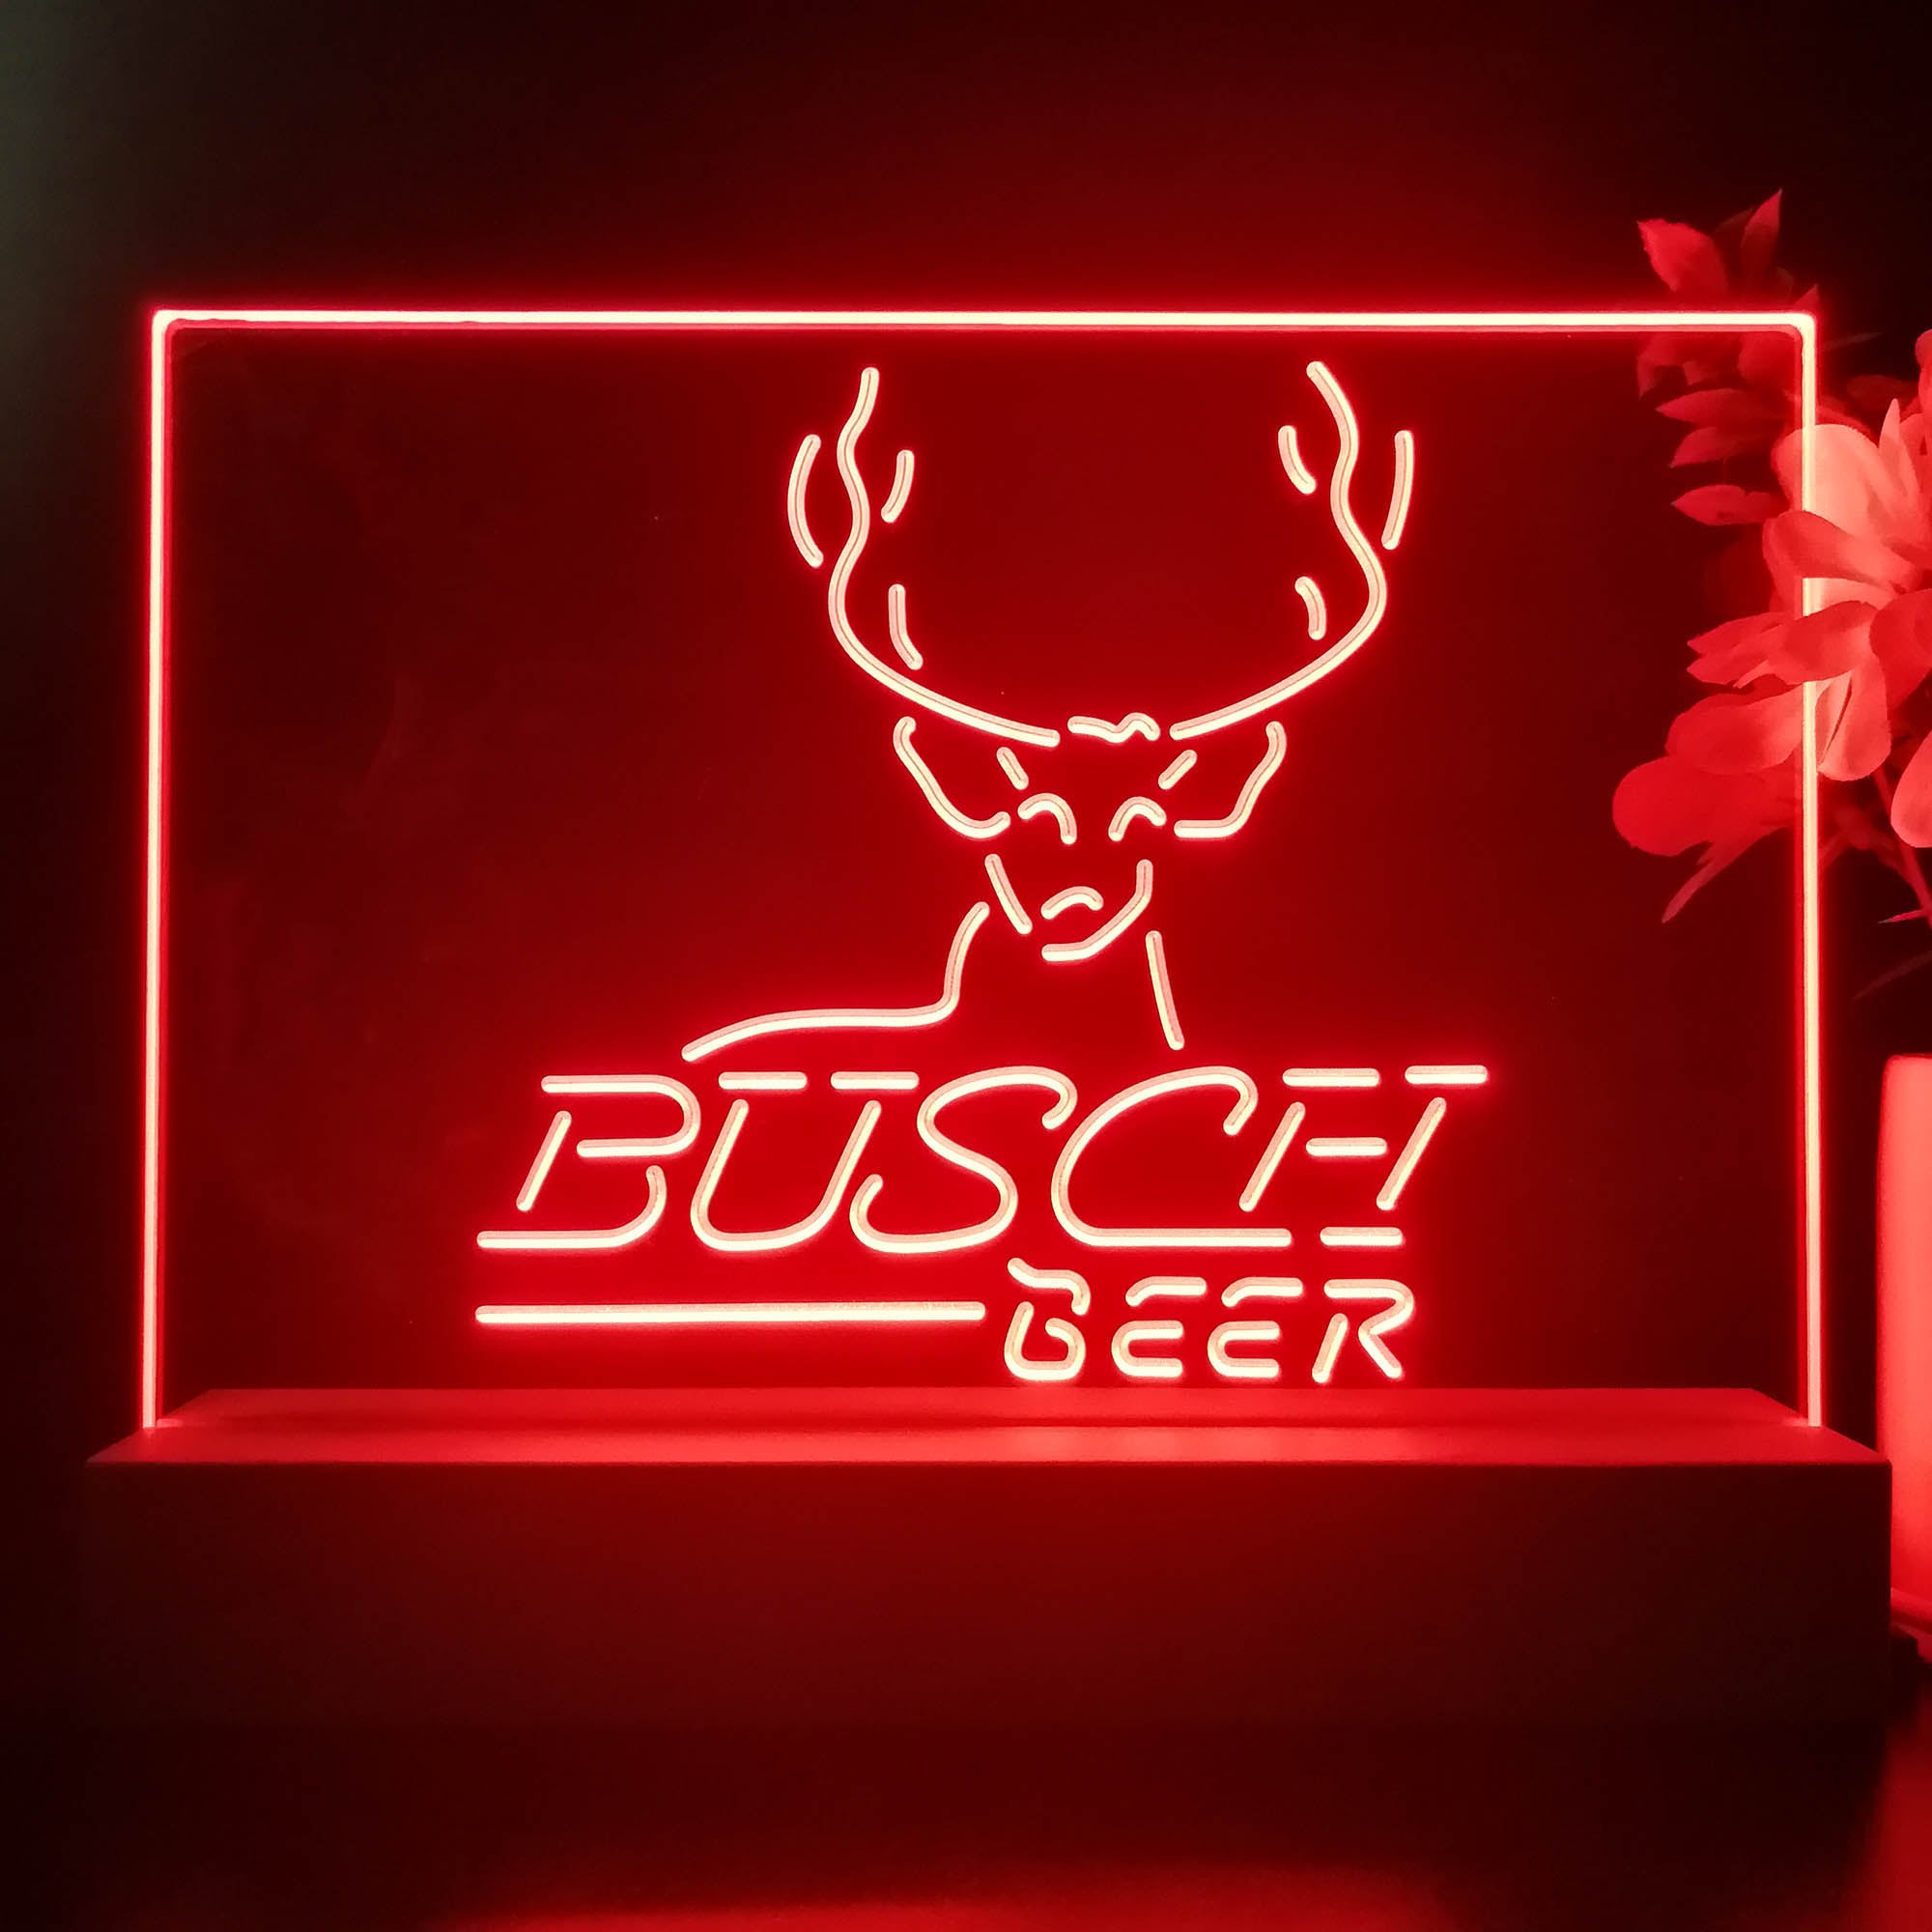 Buschs Beer Cabin Deer Hunt Neon Sign Pub Bar Lamp